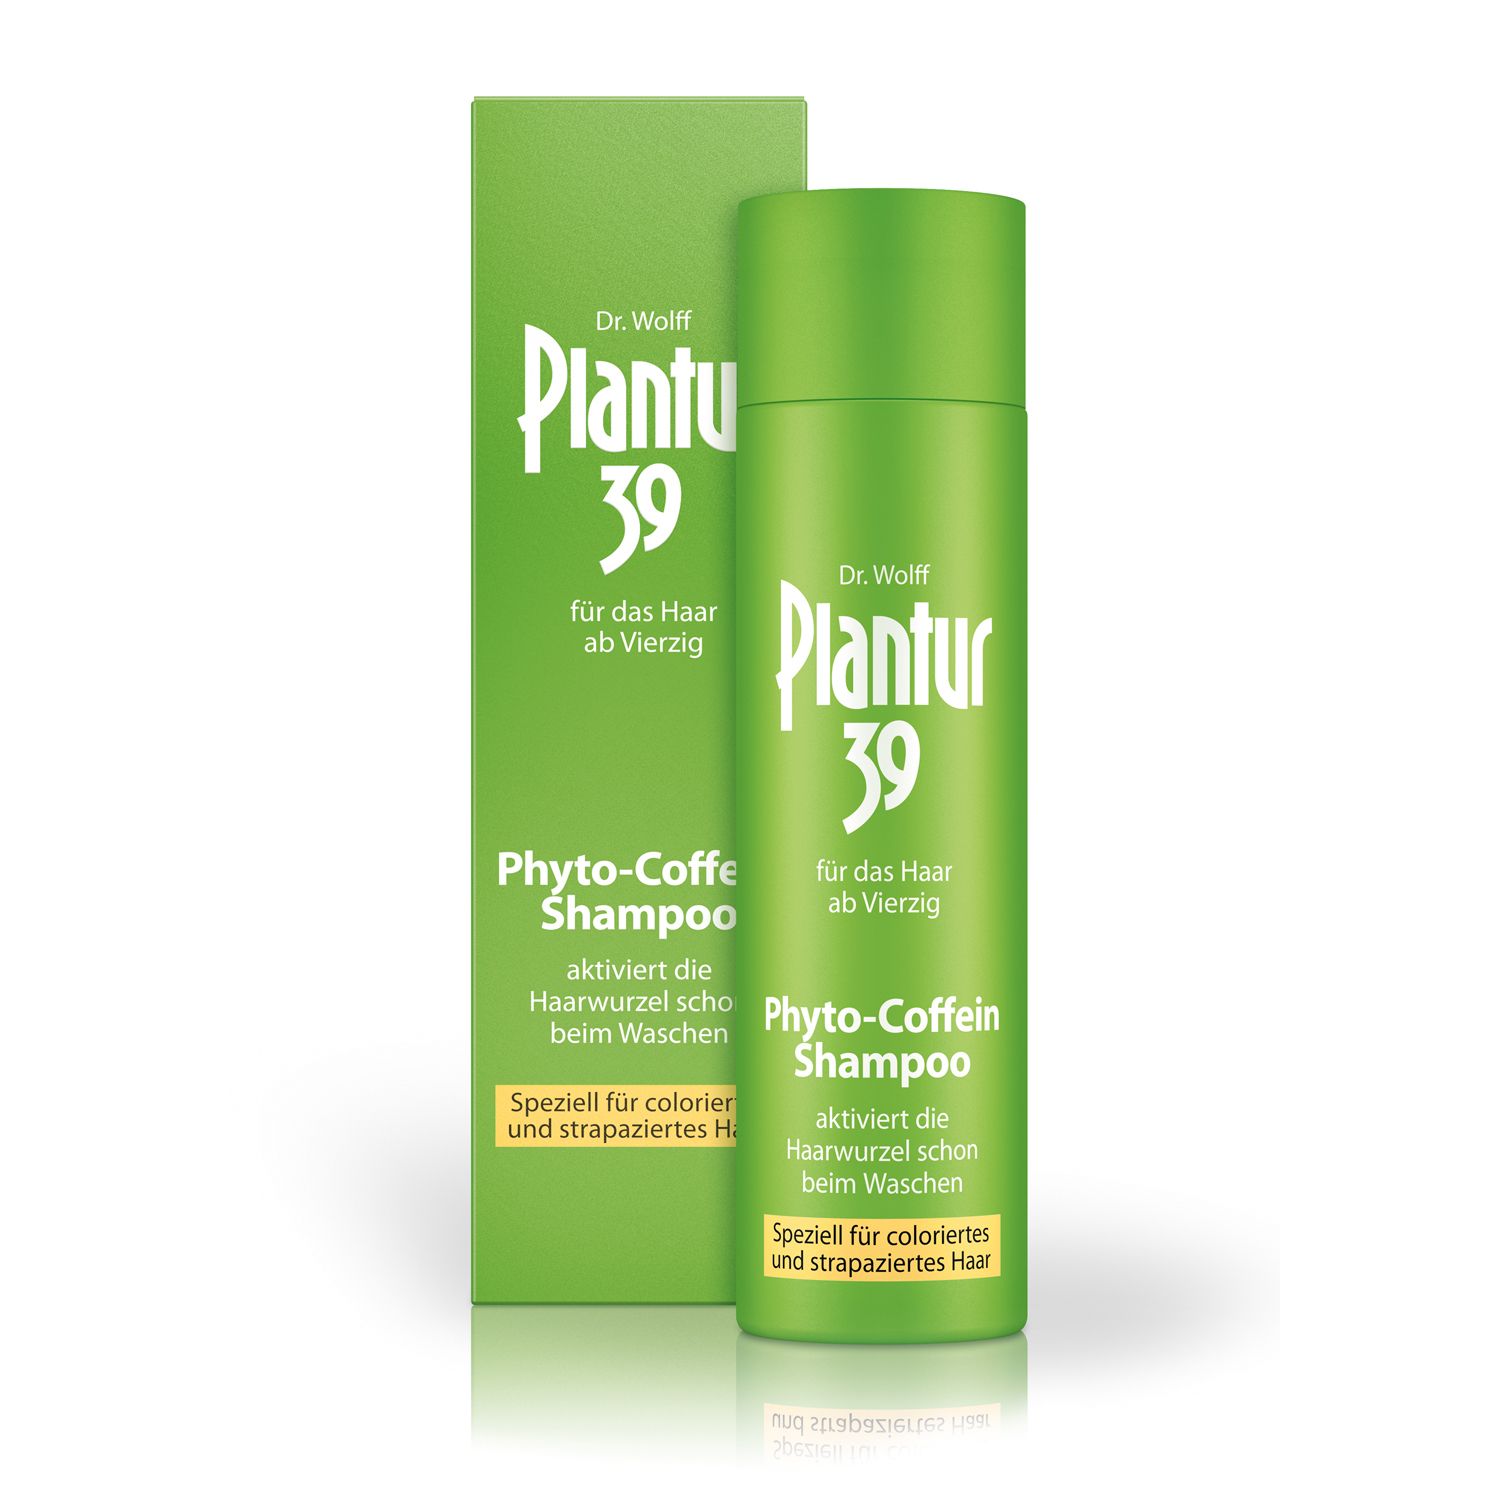 Image of Plantur 39 Phyto-Coffein-Shampoo speziell für coloriertes und strapaziertes Haar